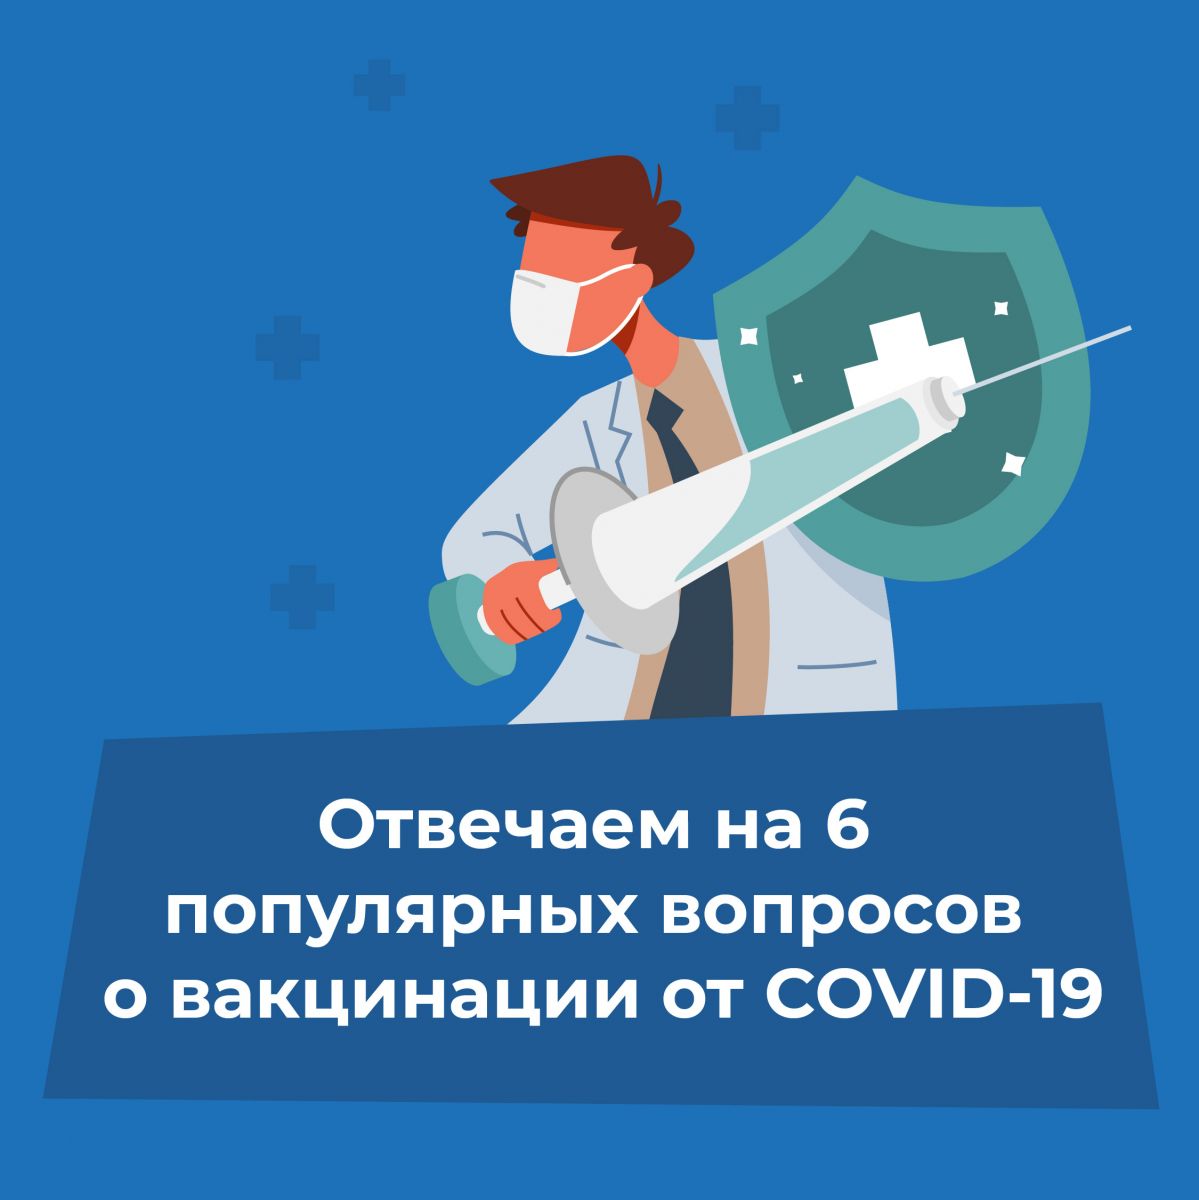 Всё, что красноярцы хотели знать о вакцинации от коронавируса – 7 карточек от ЦУРа и «7 канала Красноярск»